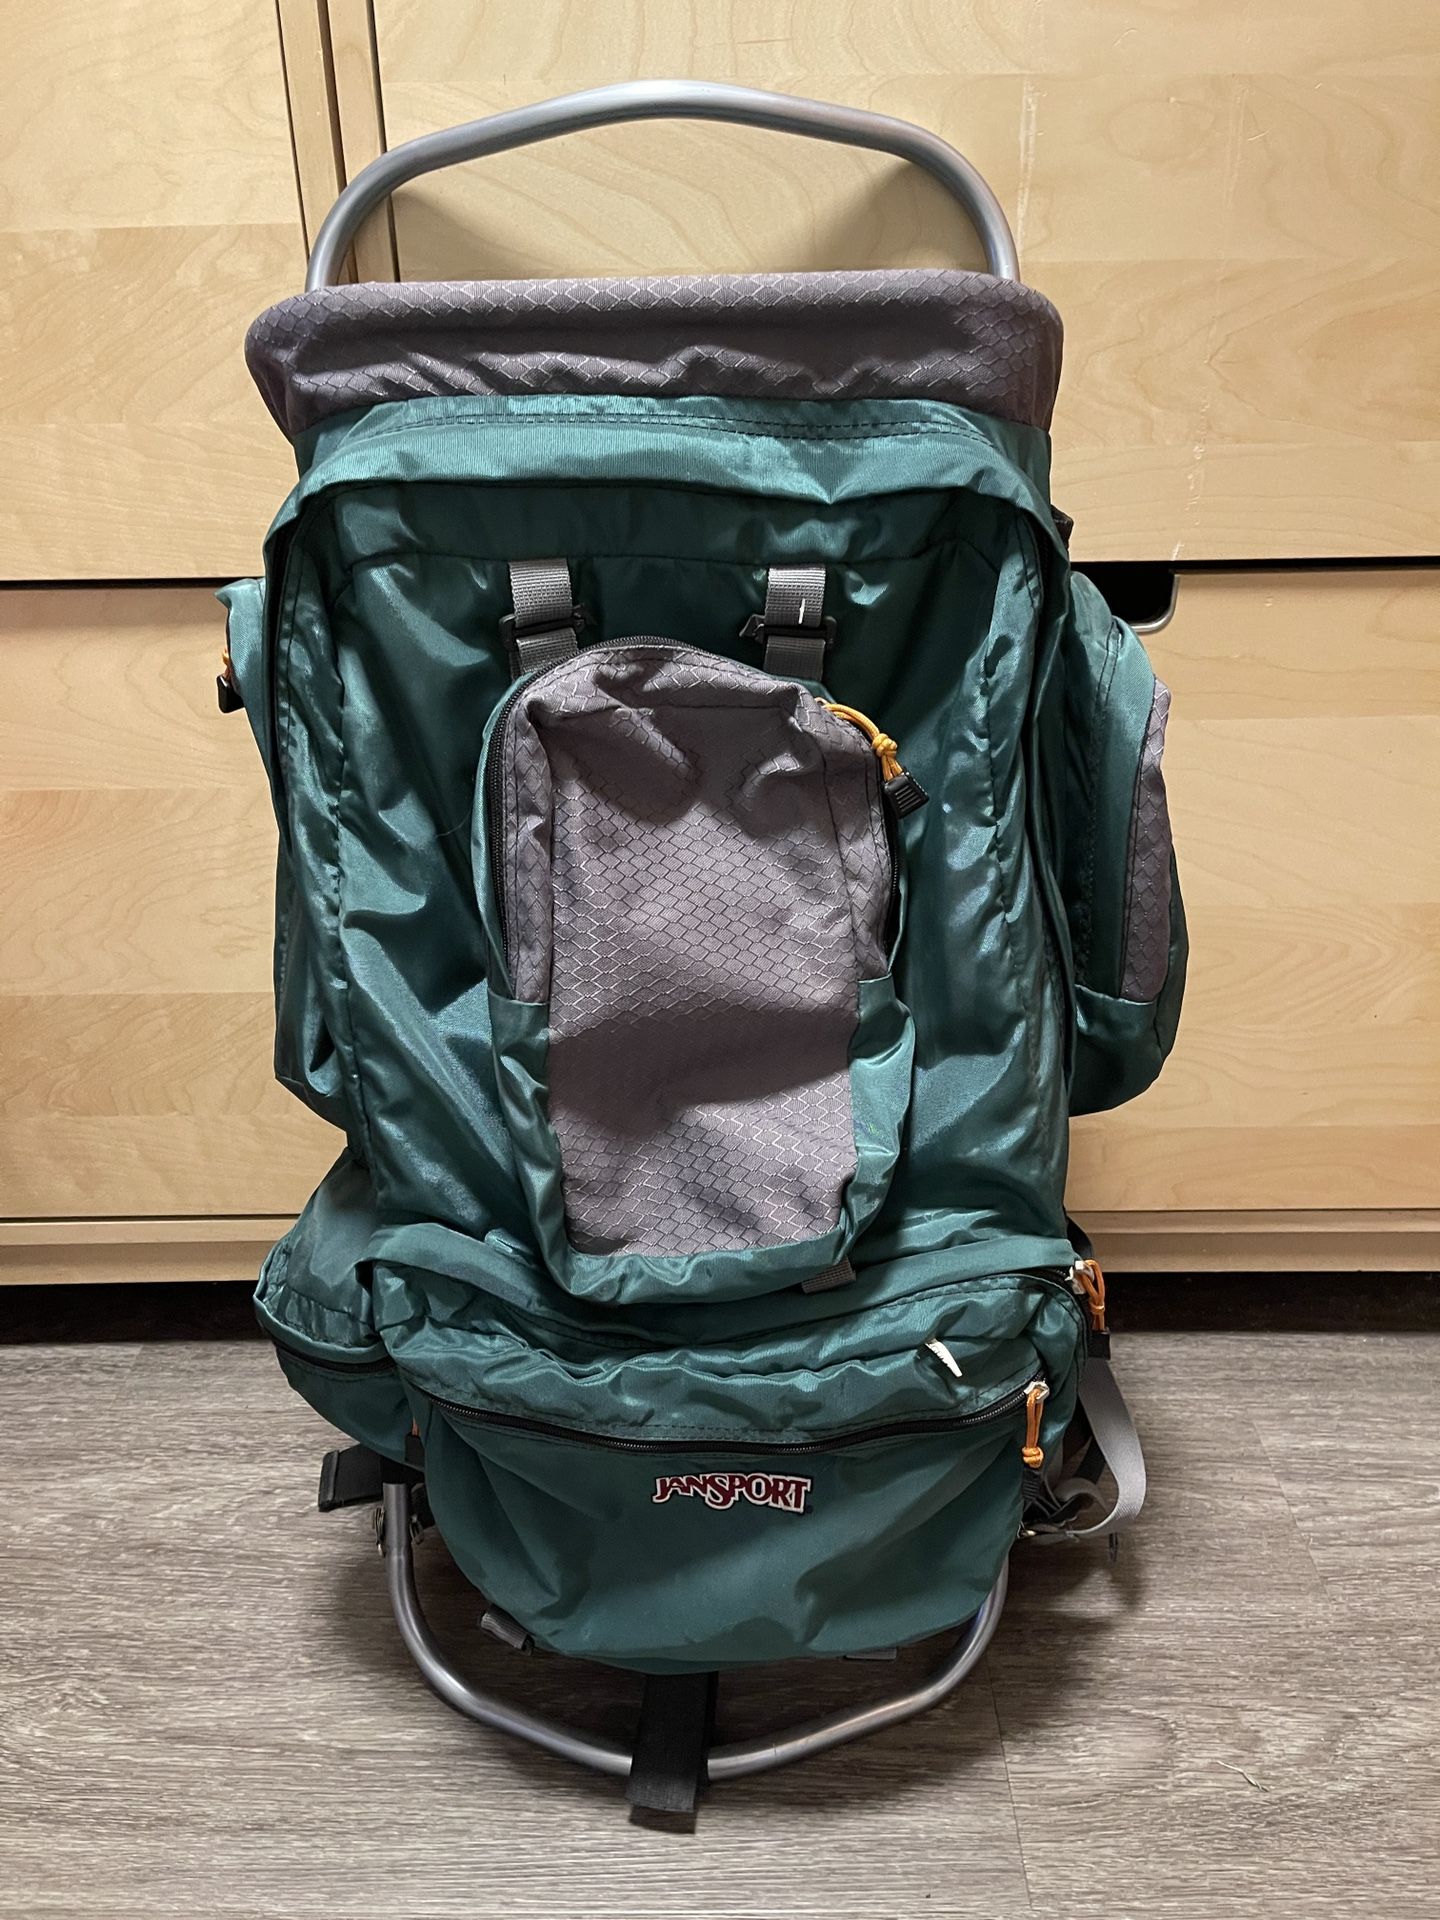 Jansport external Frame Hiking Backpack 